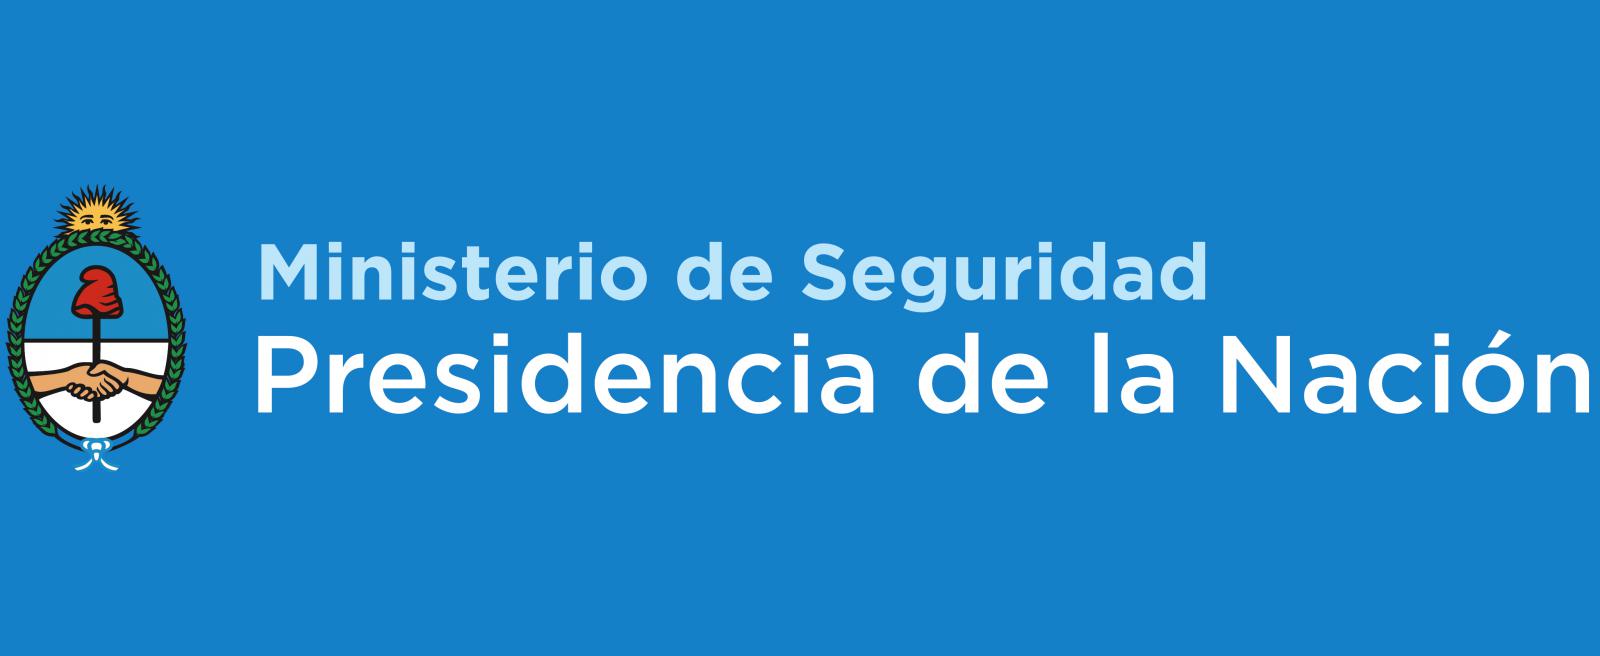 Suspensión de los prefectos que intervinieron en el operativo de Costa Salguero | Argentina.gob.ar